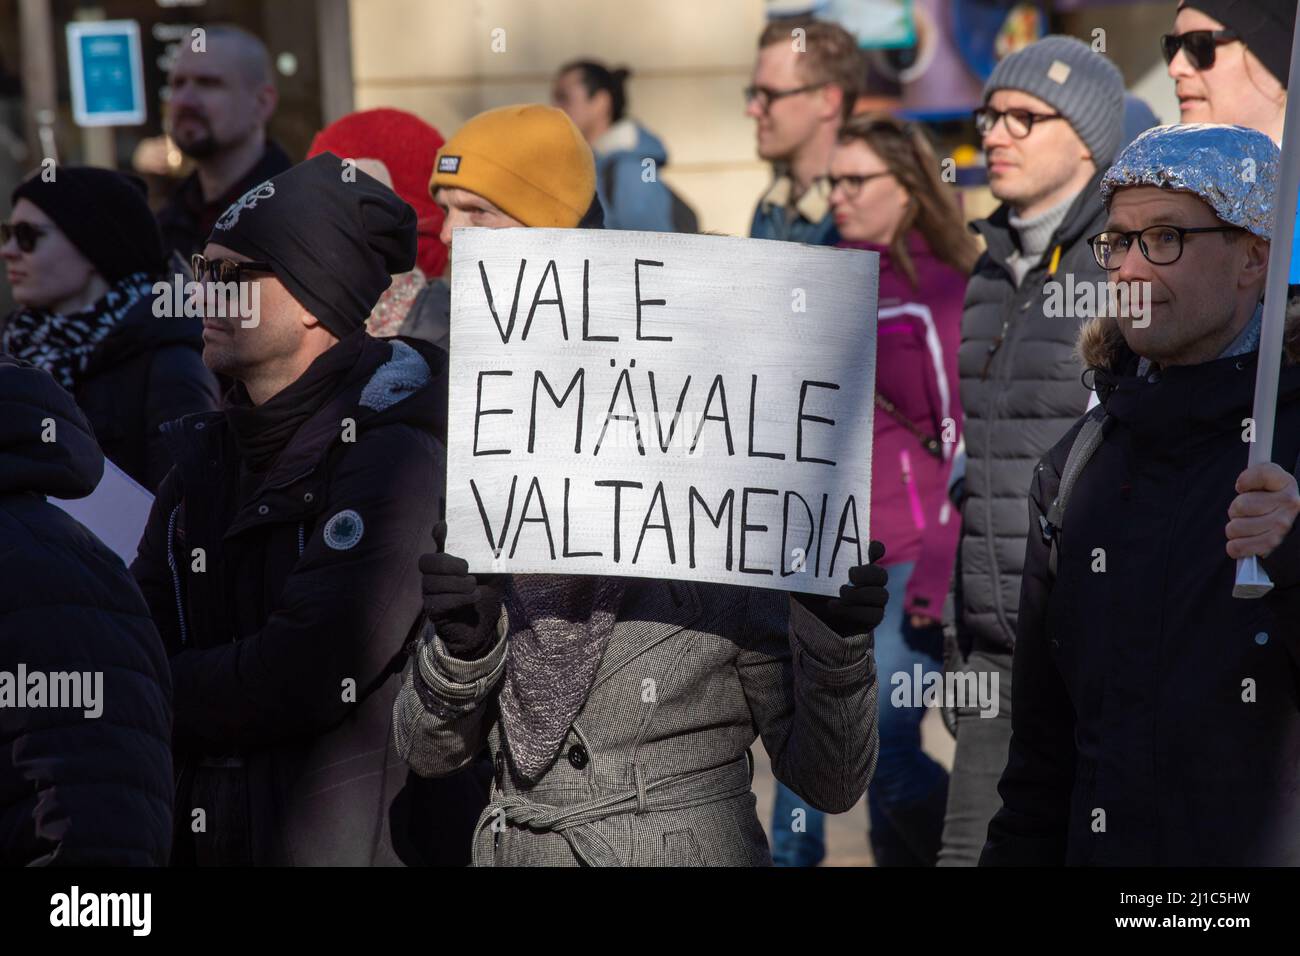 Vale emavale valtamedia. Un manifestant tient un panneau à la démonstration Worlwide 7,0 à Helsinki, en Finlande. Banque D'Images